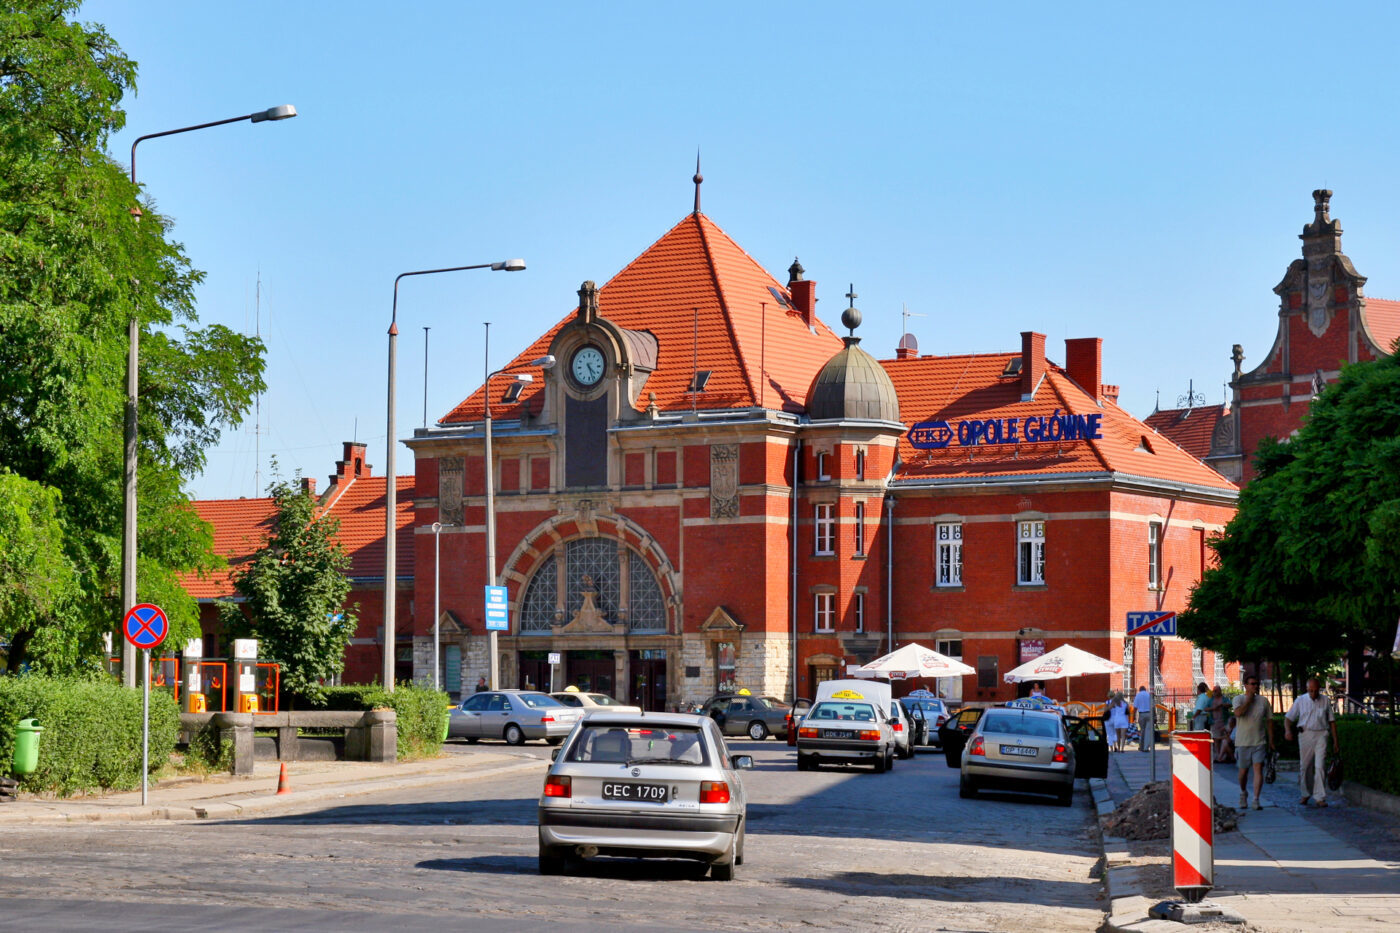 Dworzec kolejowy Opole Główne